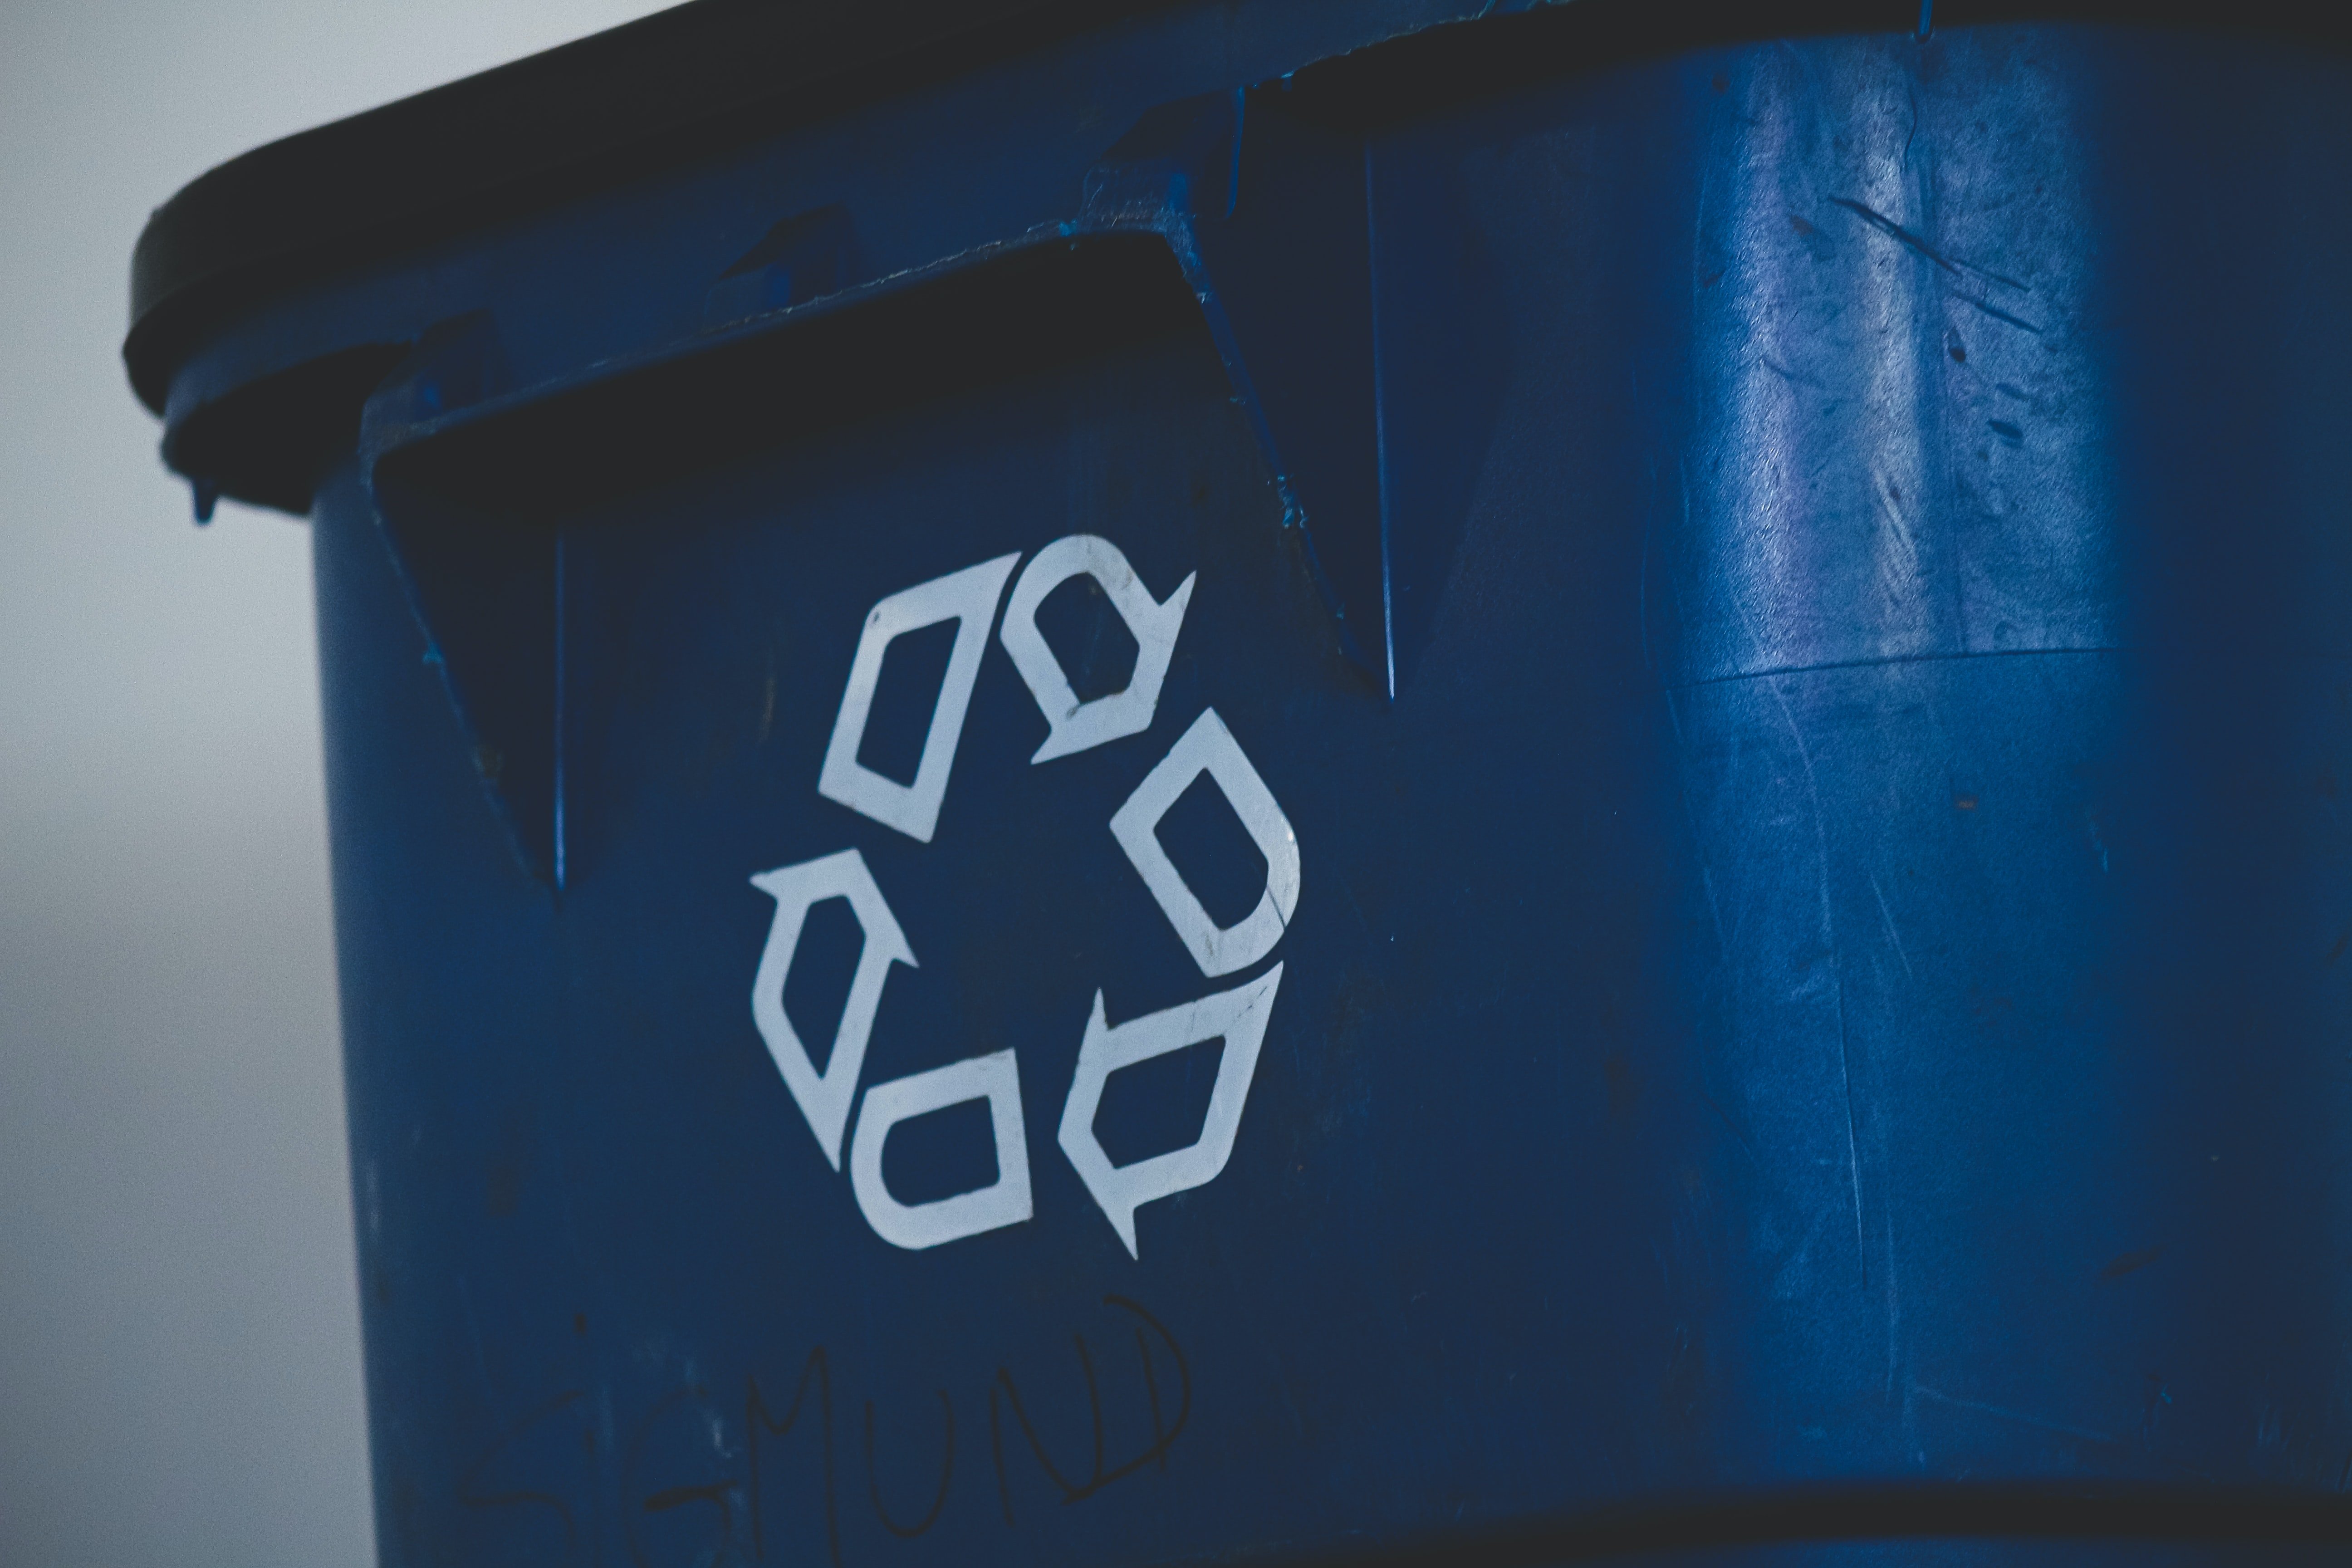 Réemploi, recyclage, upcycling... quelle différence entre ces termes liés à l'économie circulaire ?